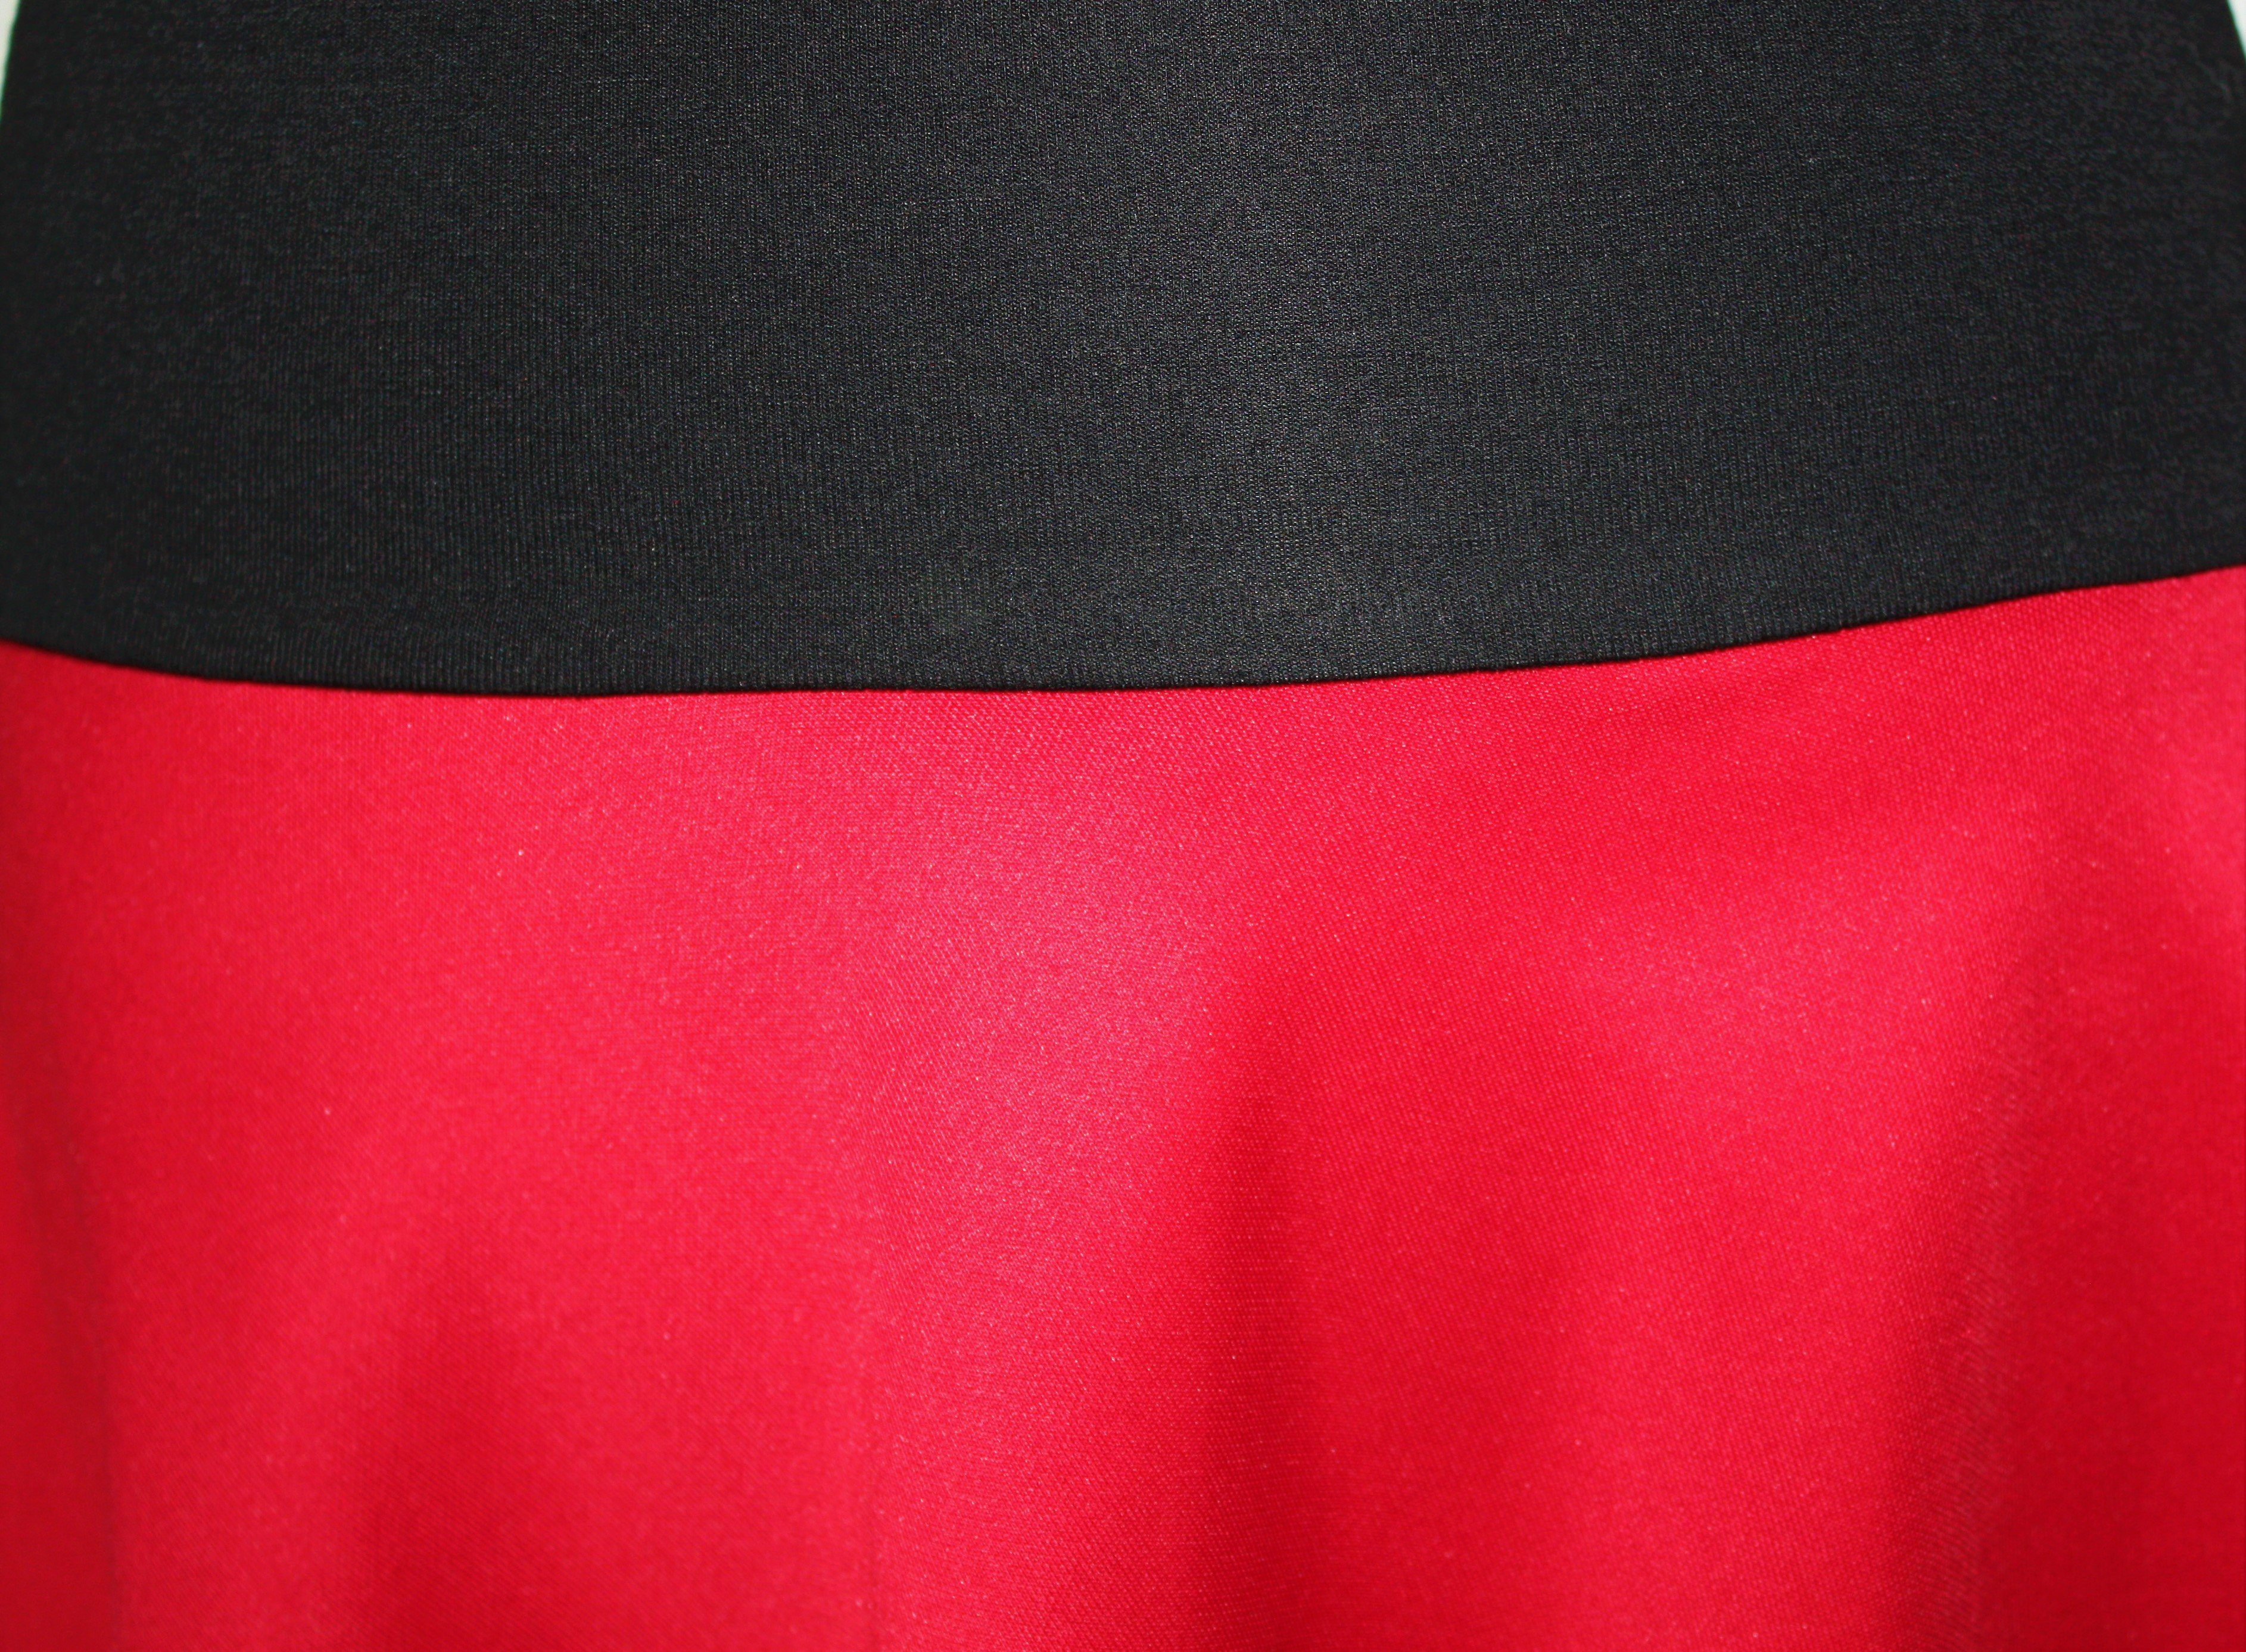 Bund dunkle Grau Asymmetrisch elastischer Jerseyrock design Grün Rot